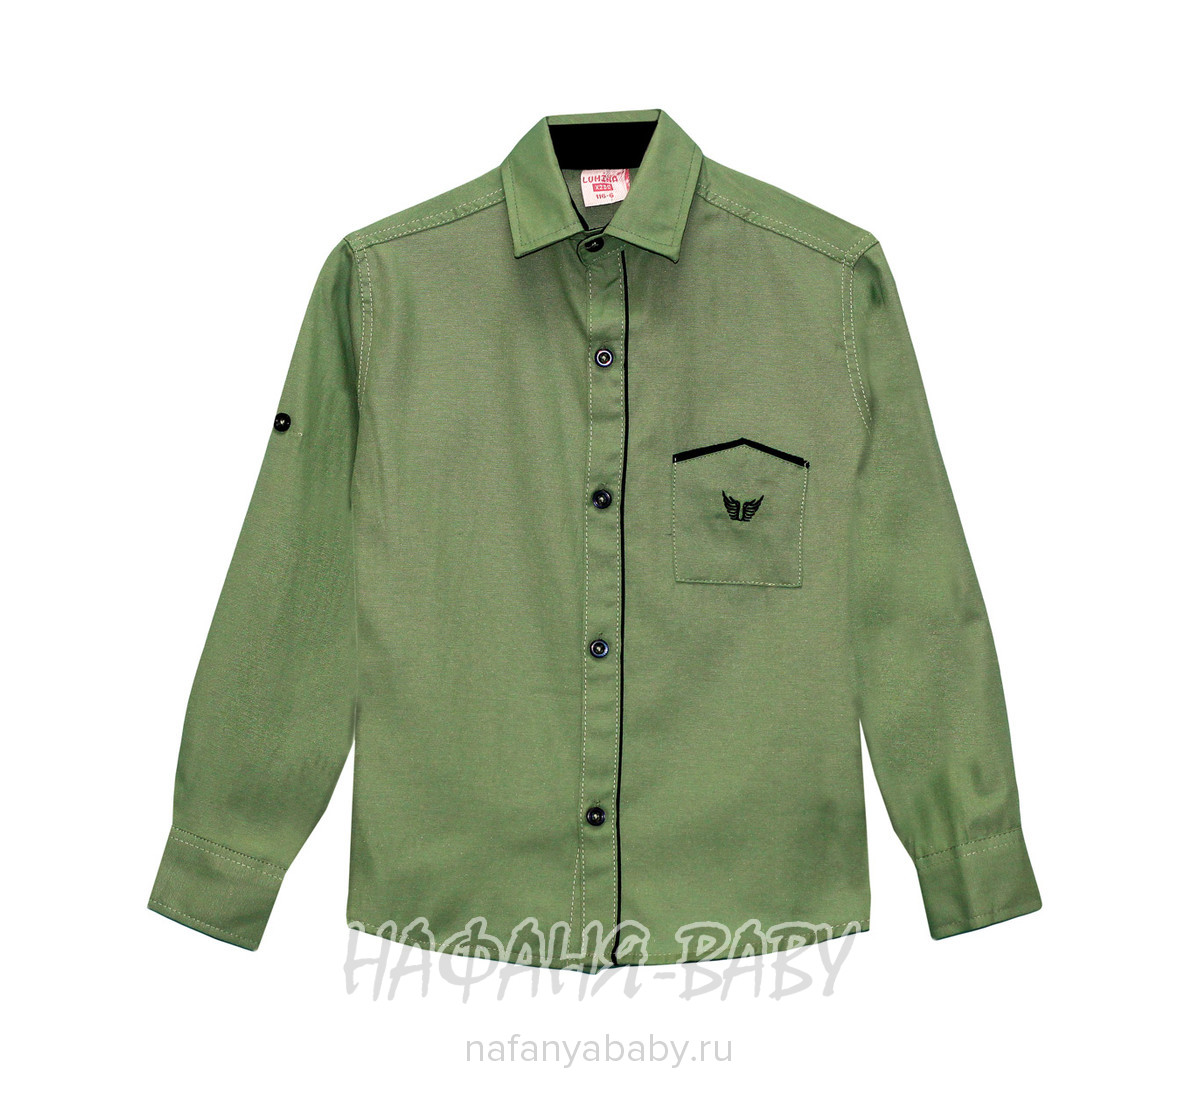 Рубашка с длинным рукавом LUMINA арт: 5072, 10-15 лет, 5-9 лет, цвет темно-зеленый хаки, оптом Турция